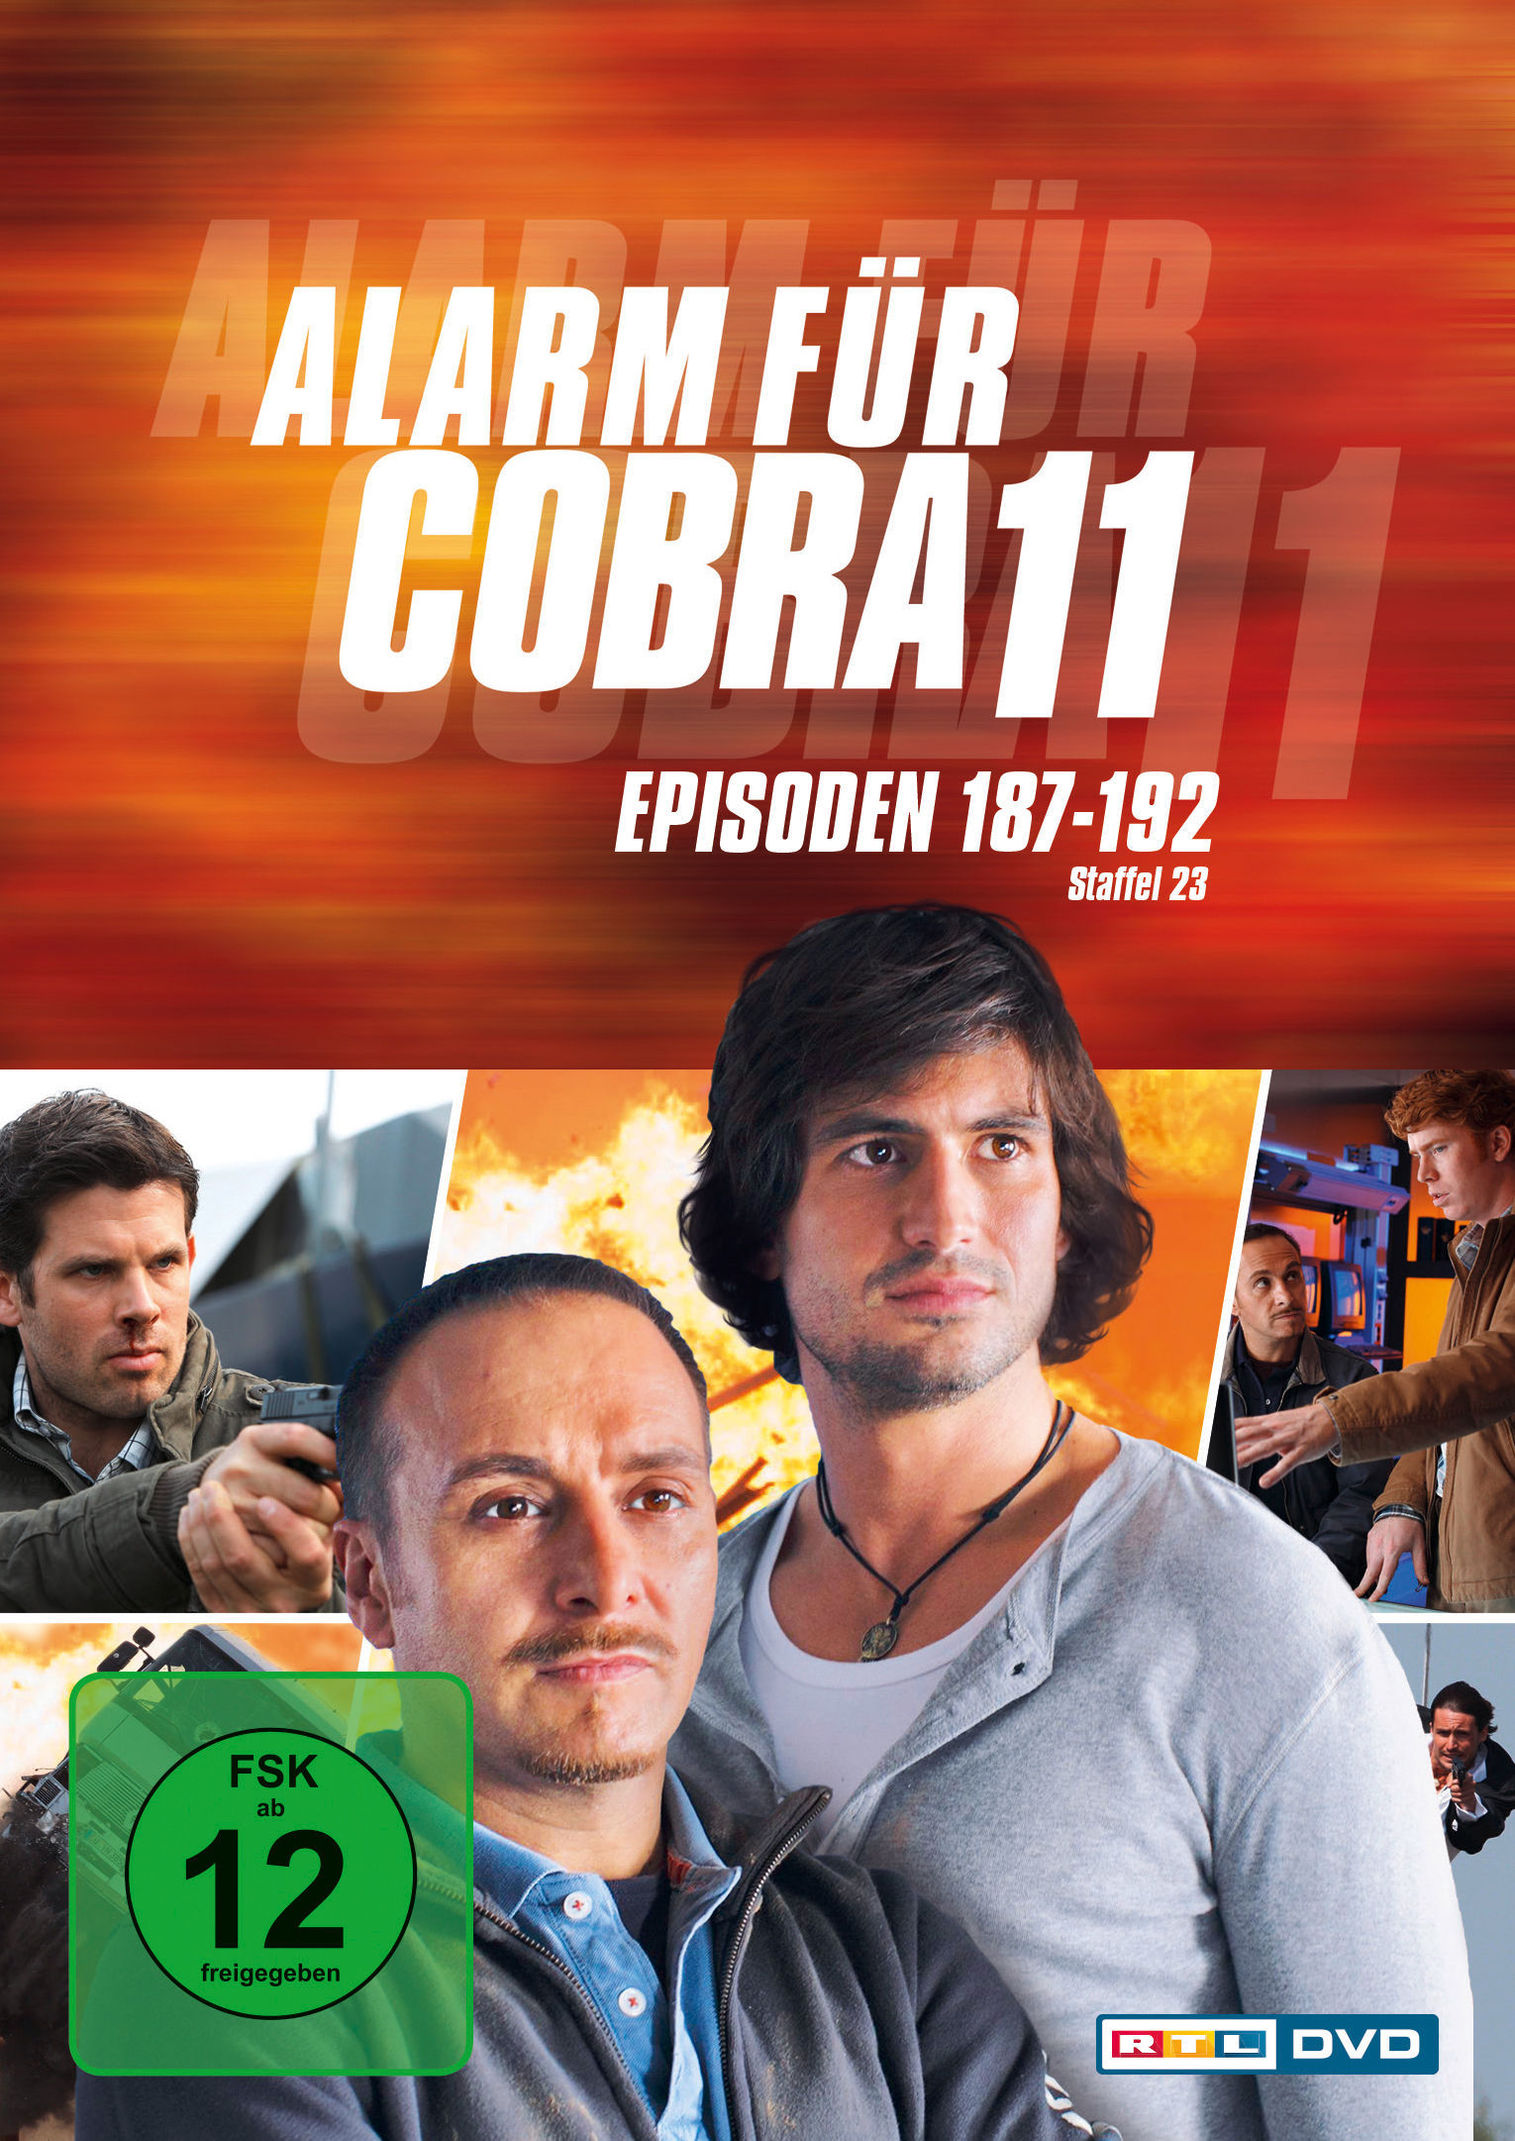 Alarm für Cobra 11 - Staffel 23 DVD bei Weltbild.ch bestellen